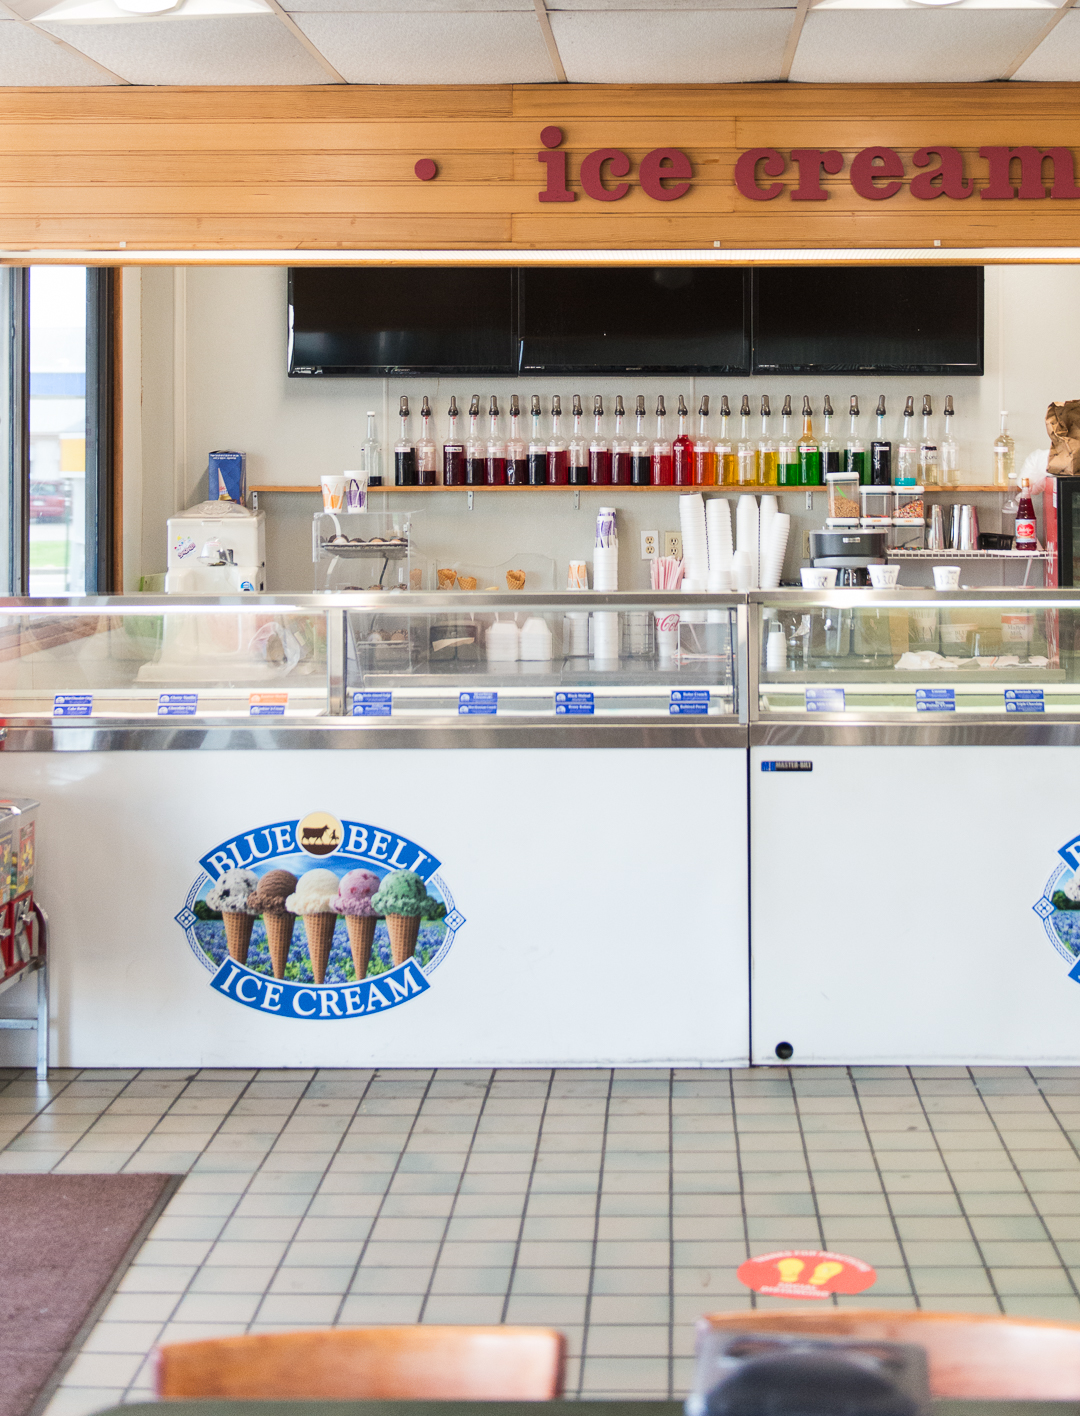 7 Places in Brenham to Get a Scoop of Blue Bell Ice Cream - Visit Brenham  Texas